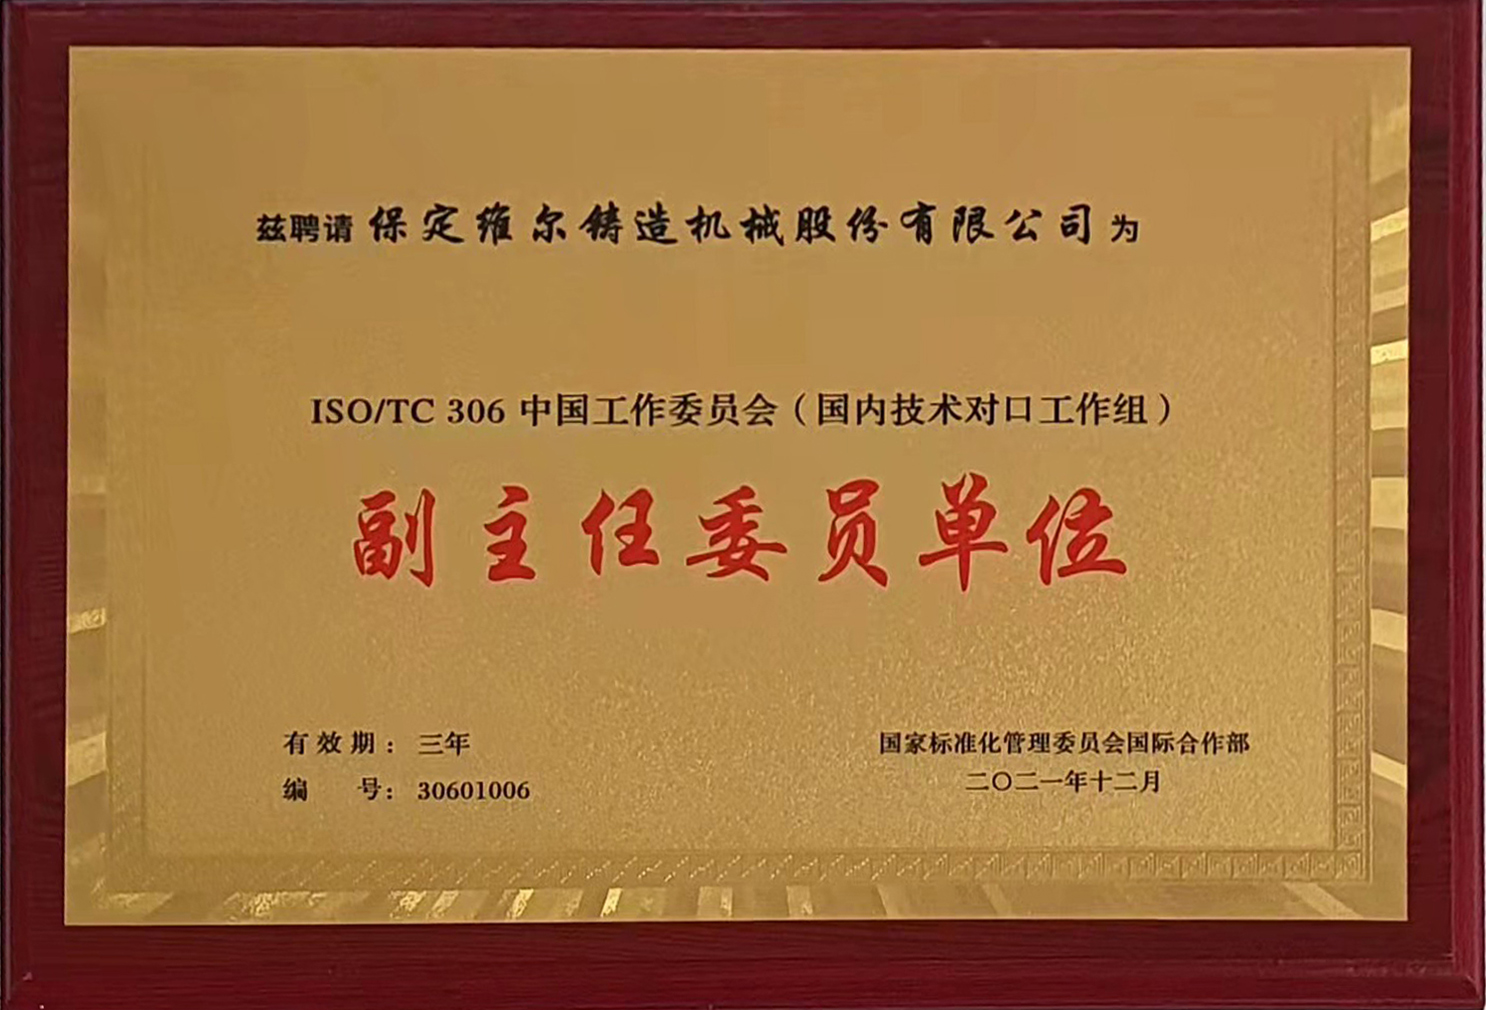 国际标准化组织铸造机械技术委员会 (ISO/TC306)中国是情委员会副主任委员单位